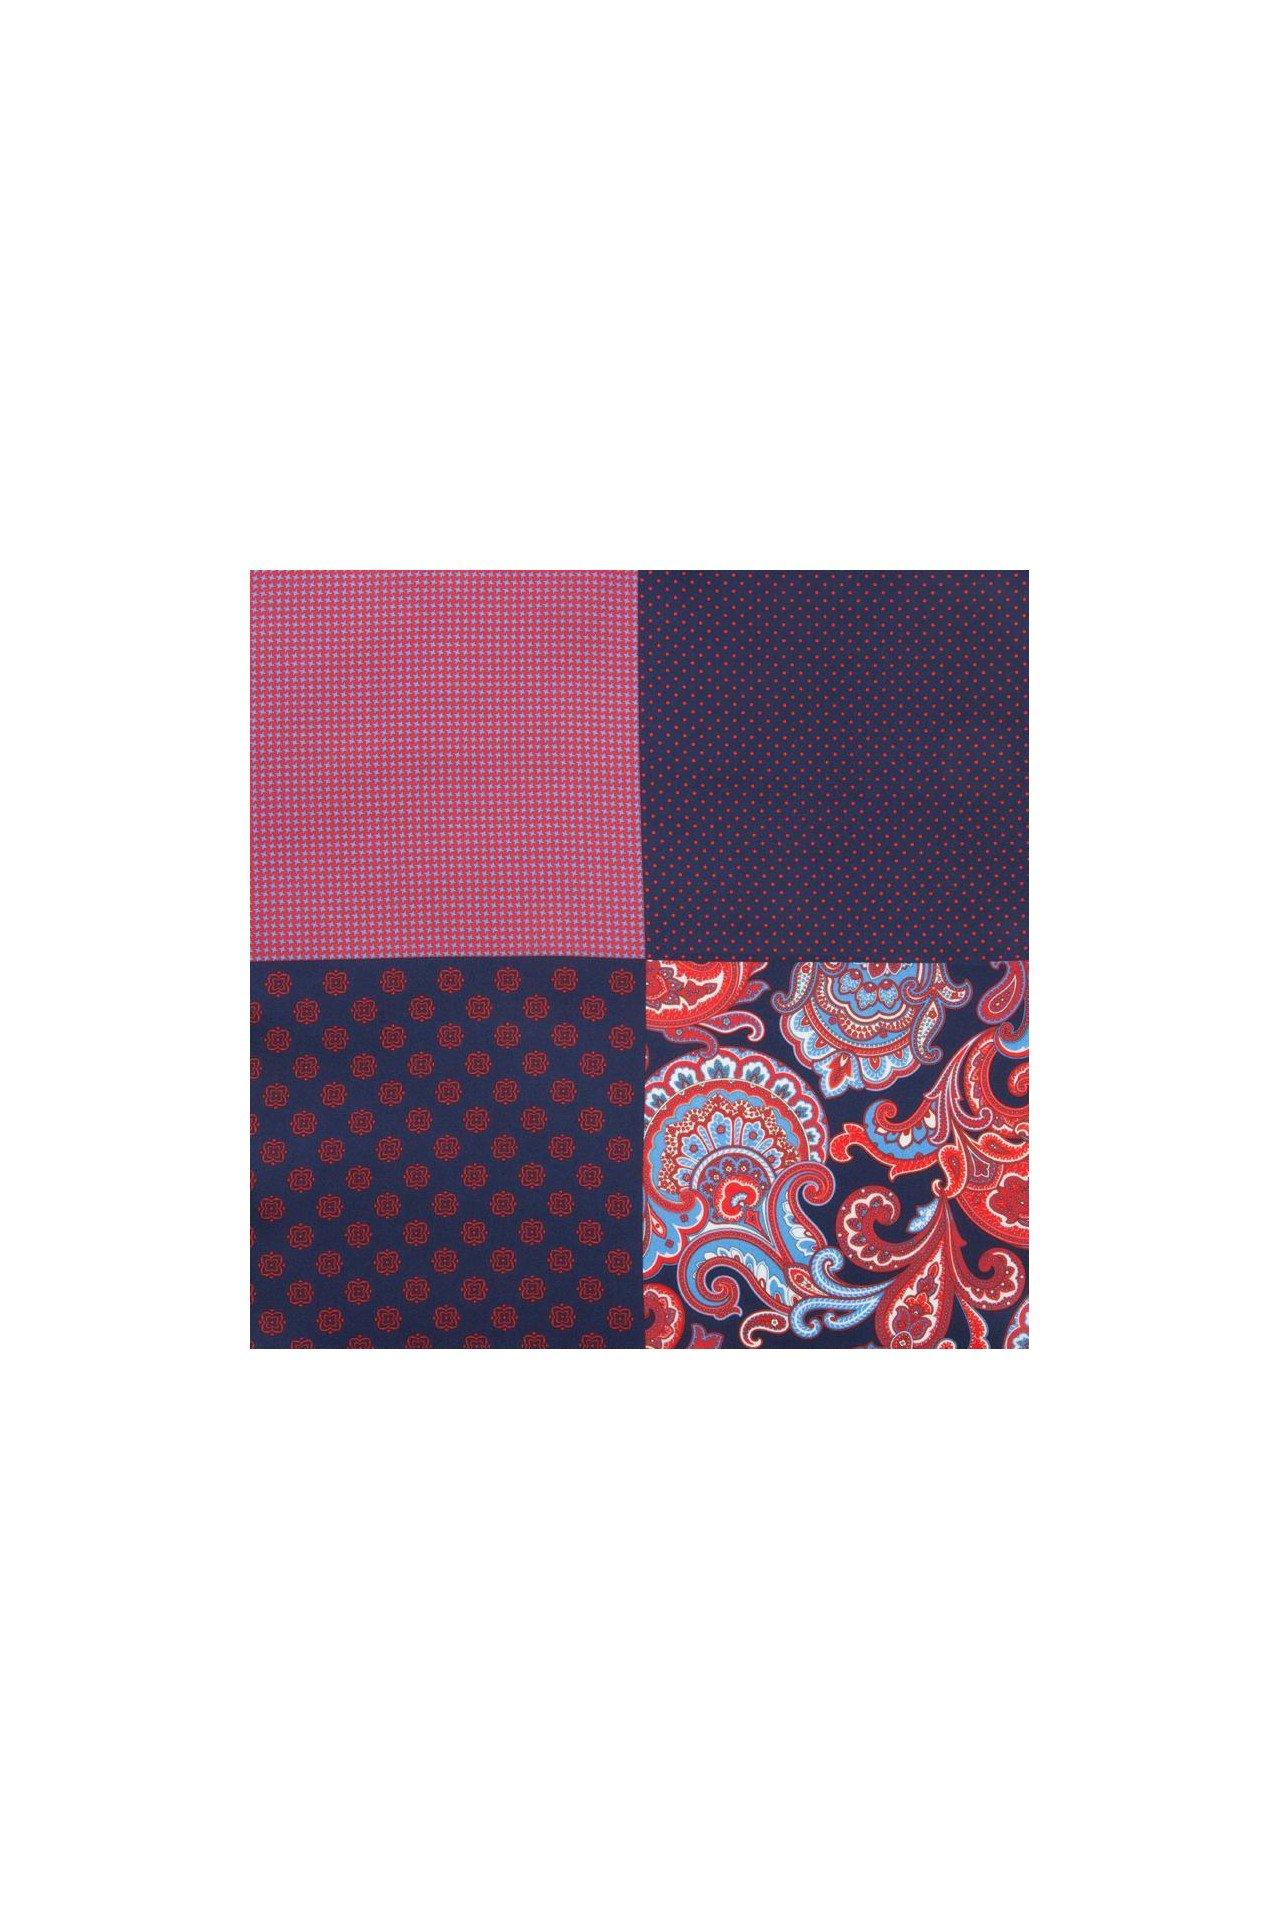 Atelier F&B  Pochette de costume imprimée 4 motifs en soie 